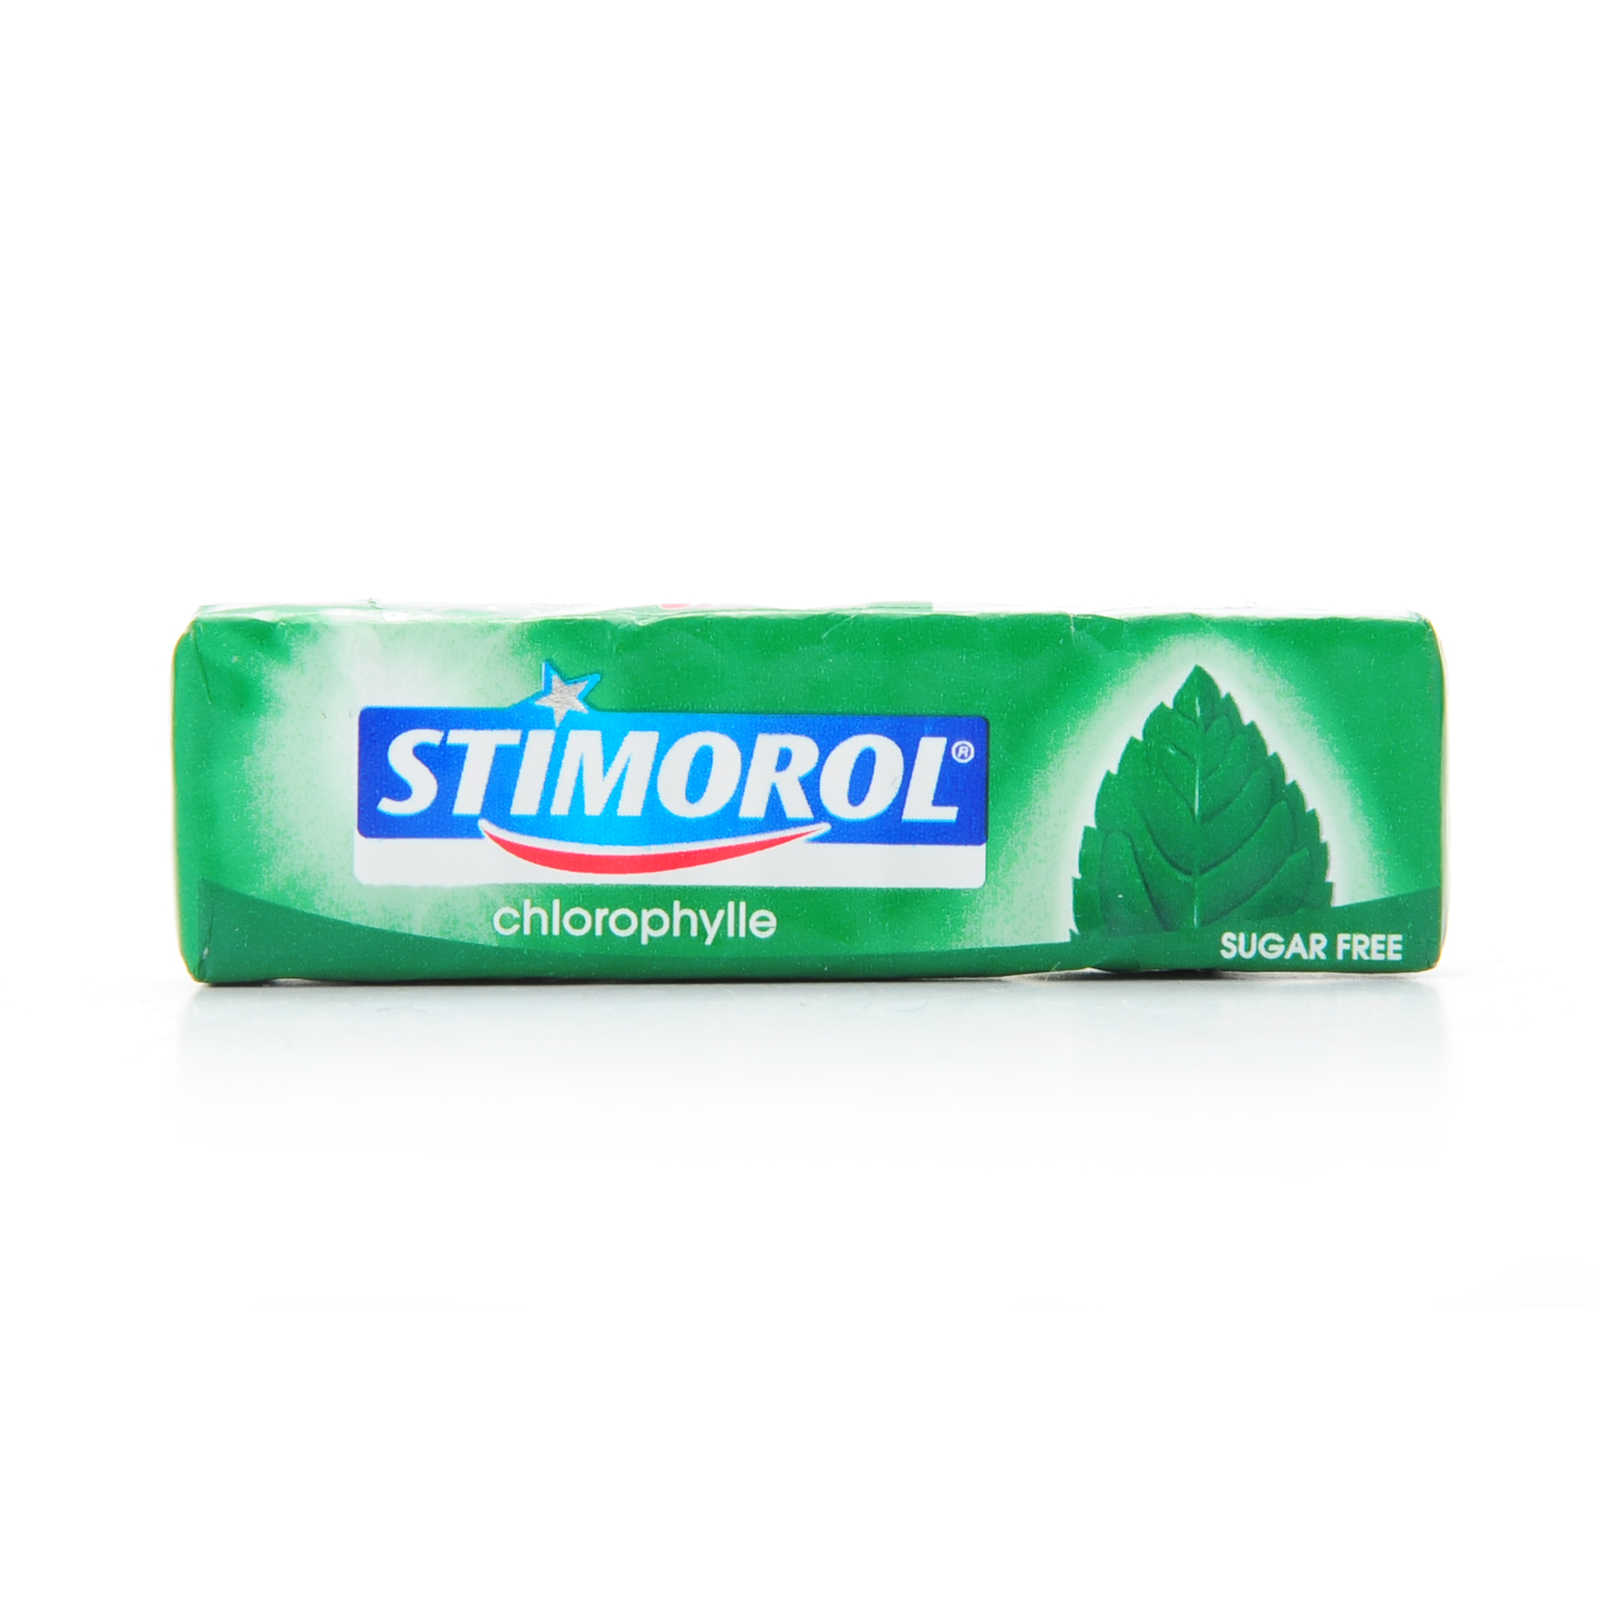 Stimorol